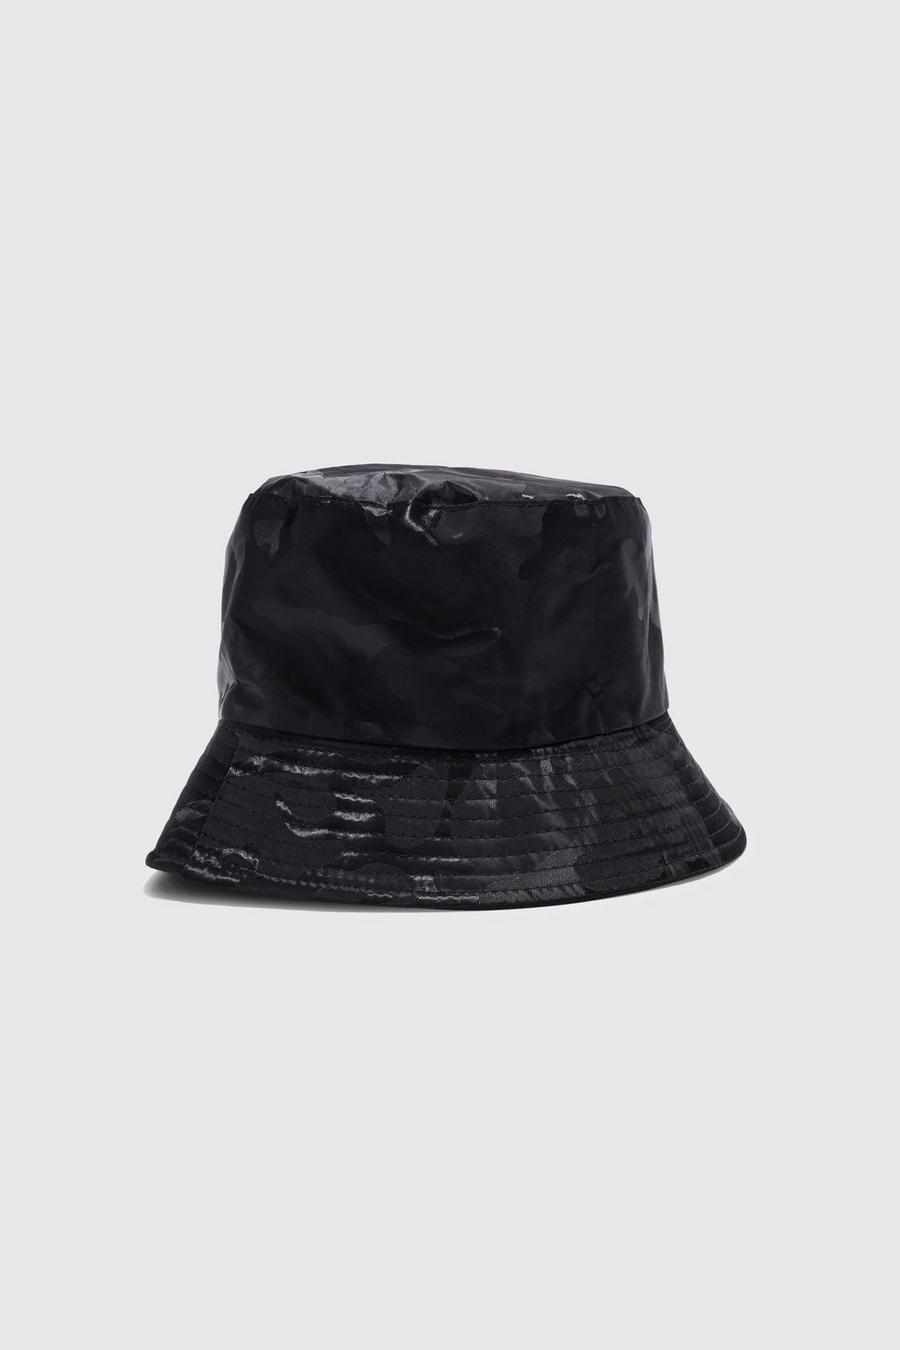 czarny kapelusz bucket wzór moro